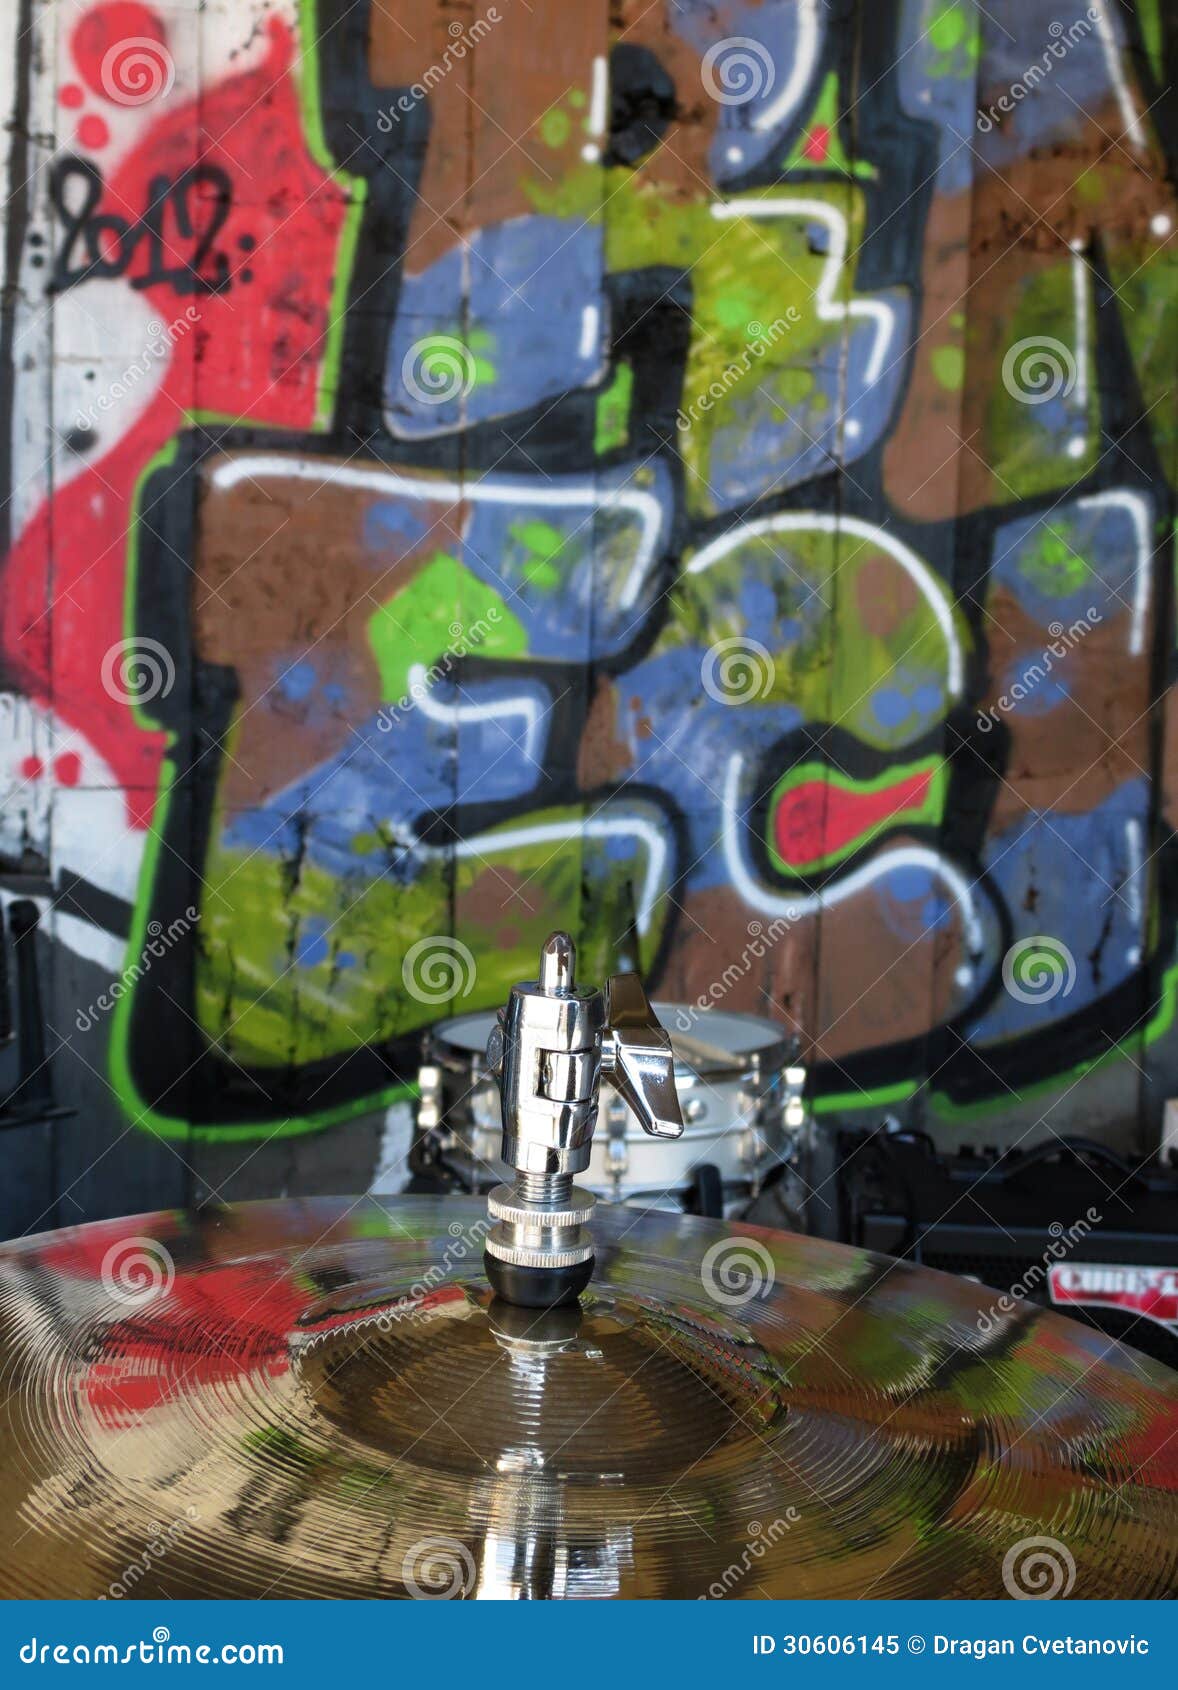 cymbal with graffiti reflection